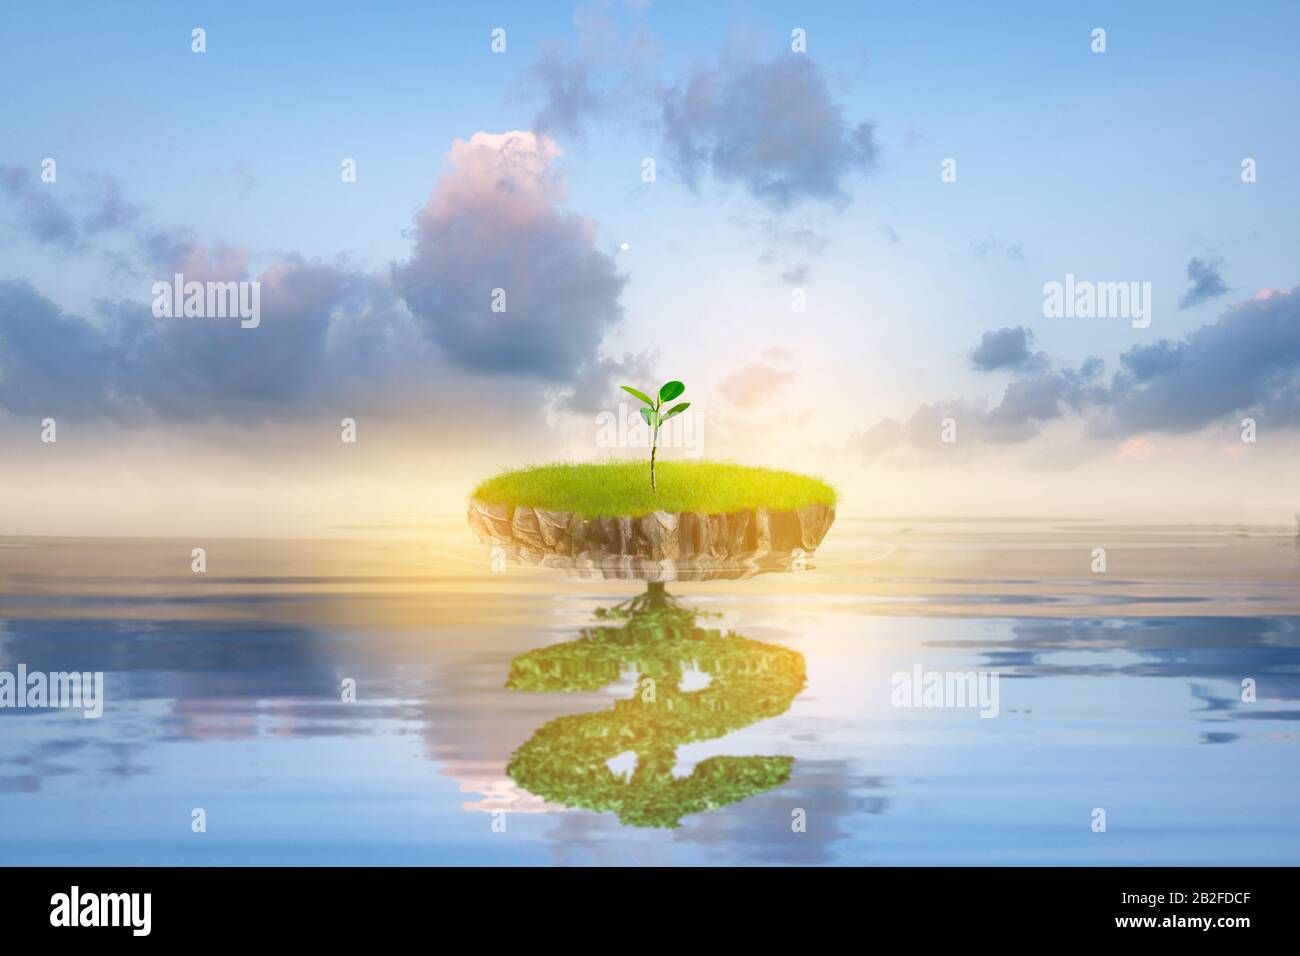 Petite île d'arbre vert avec un signe de réflexion dollar dans l'eau calme de l'océan. Paysage naturel avec pré d'été et ciel bleu. Écosystème convivial Banque D'Images